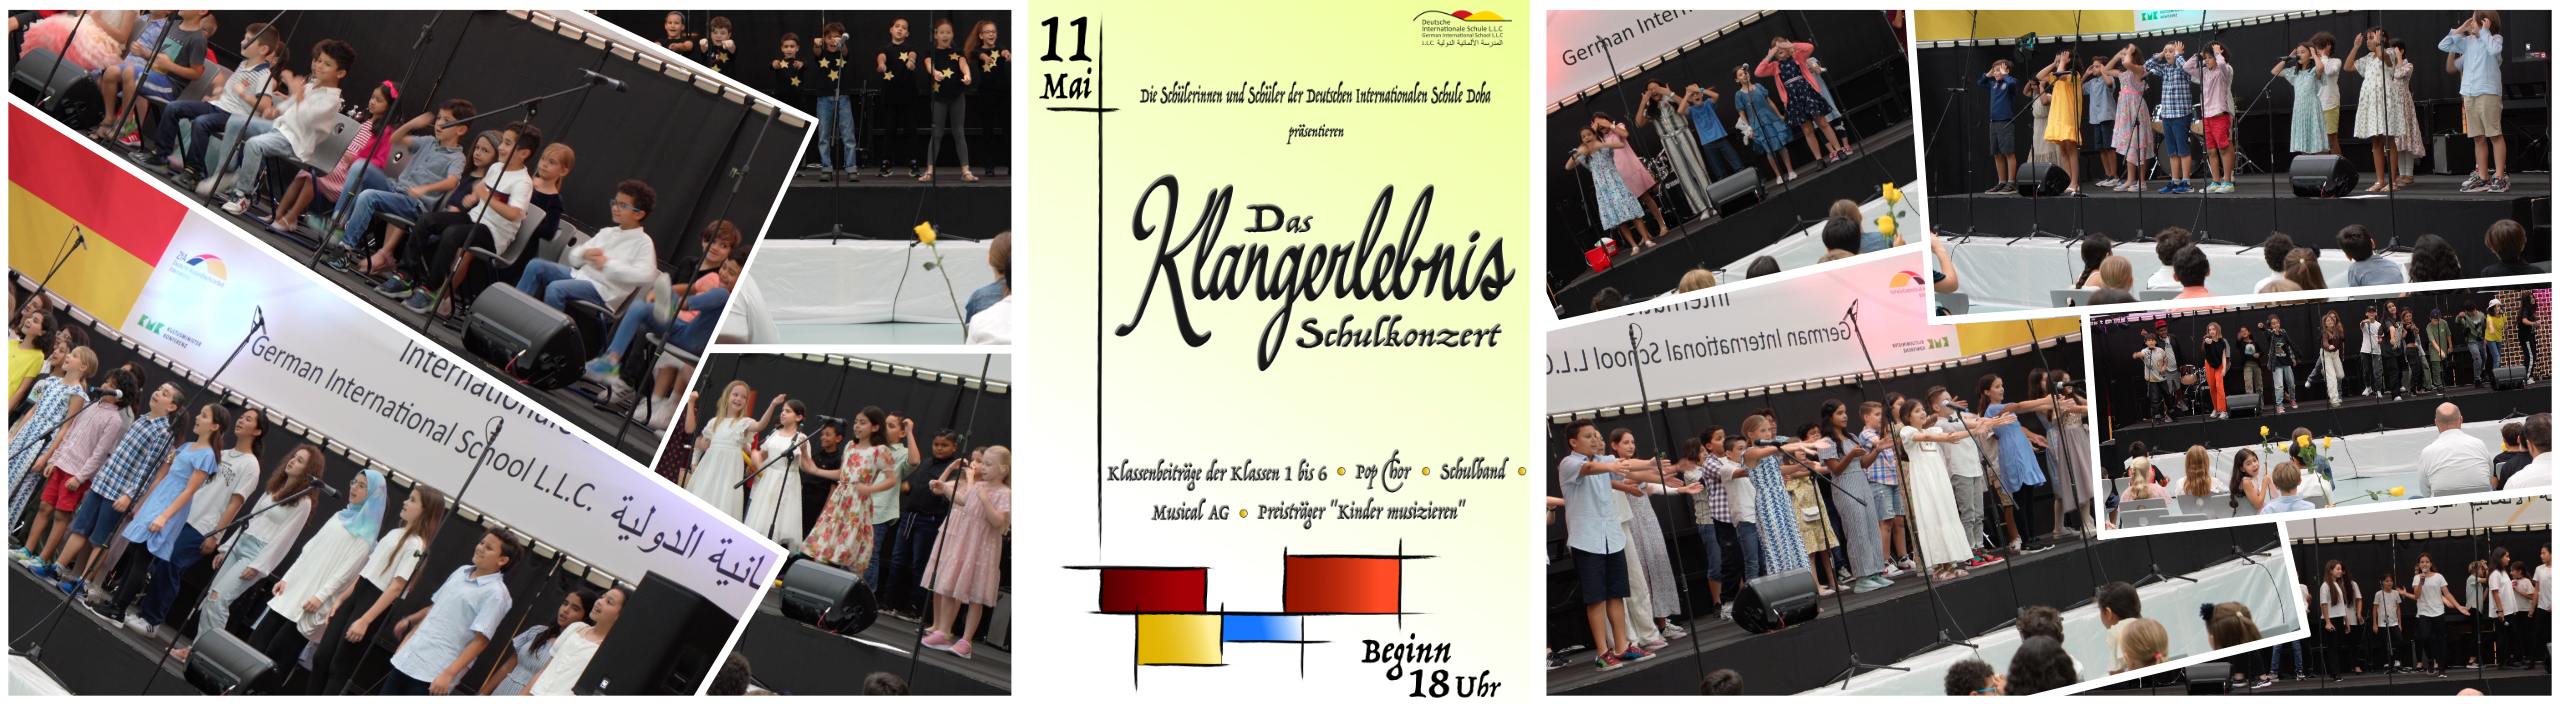 School Concert "Klangerlebnis"